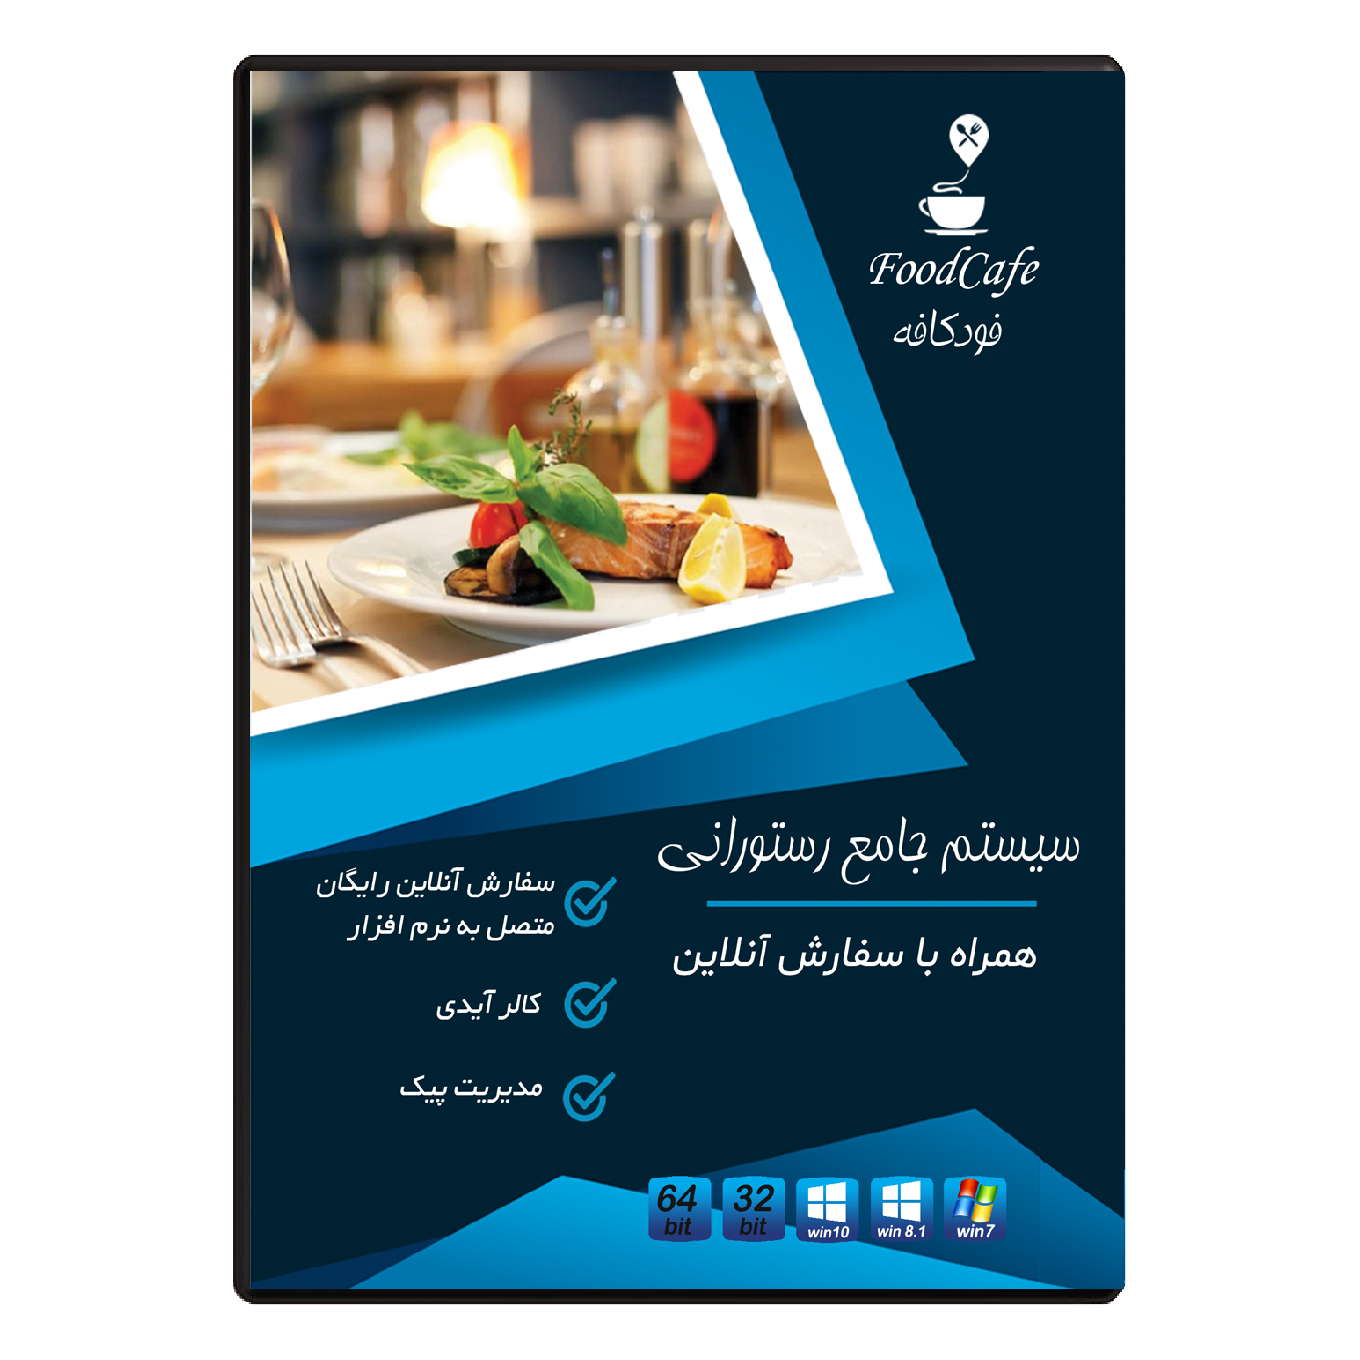 نرم افزار سیستم جامع رستورانی همراه با سفارش آنلاین نشر فودکافه